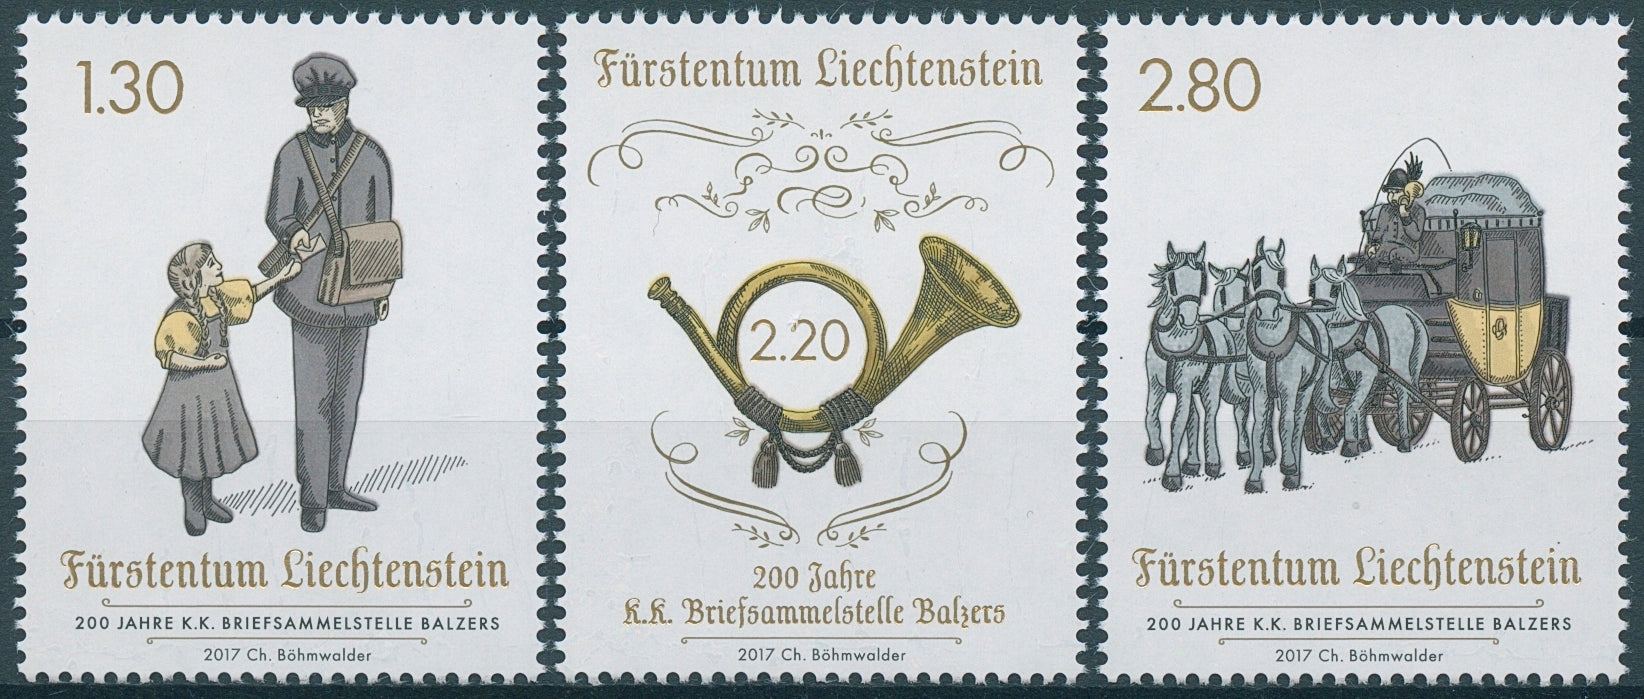 Liechtenstein 2017 MNH Briefsammelstelle Balzers 3v Set Postal Services Stamps